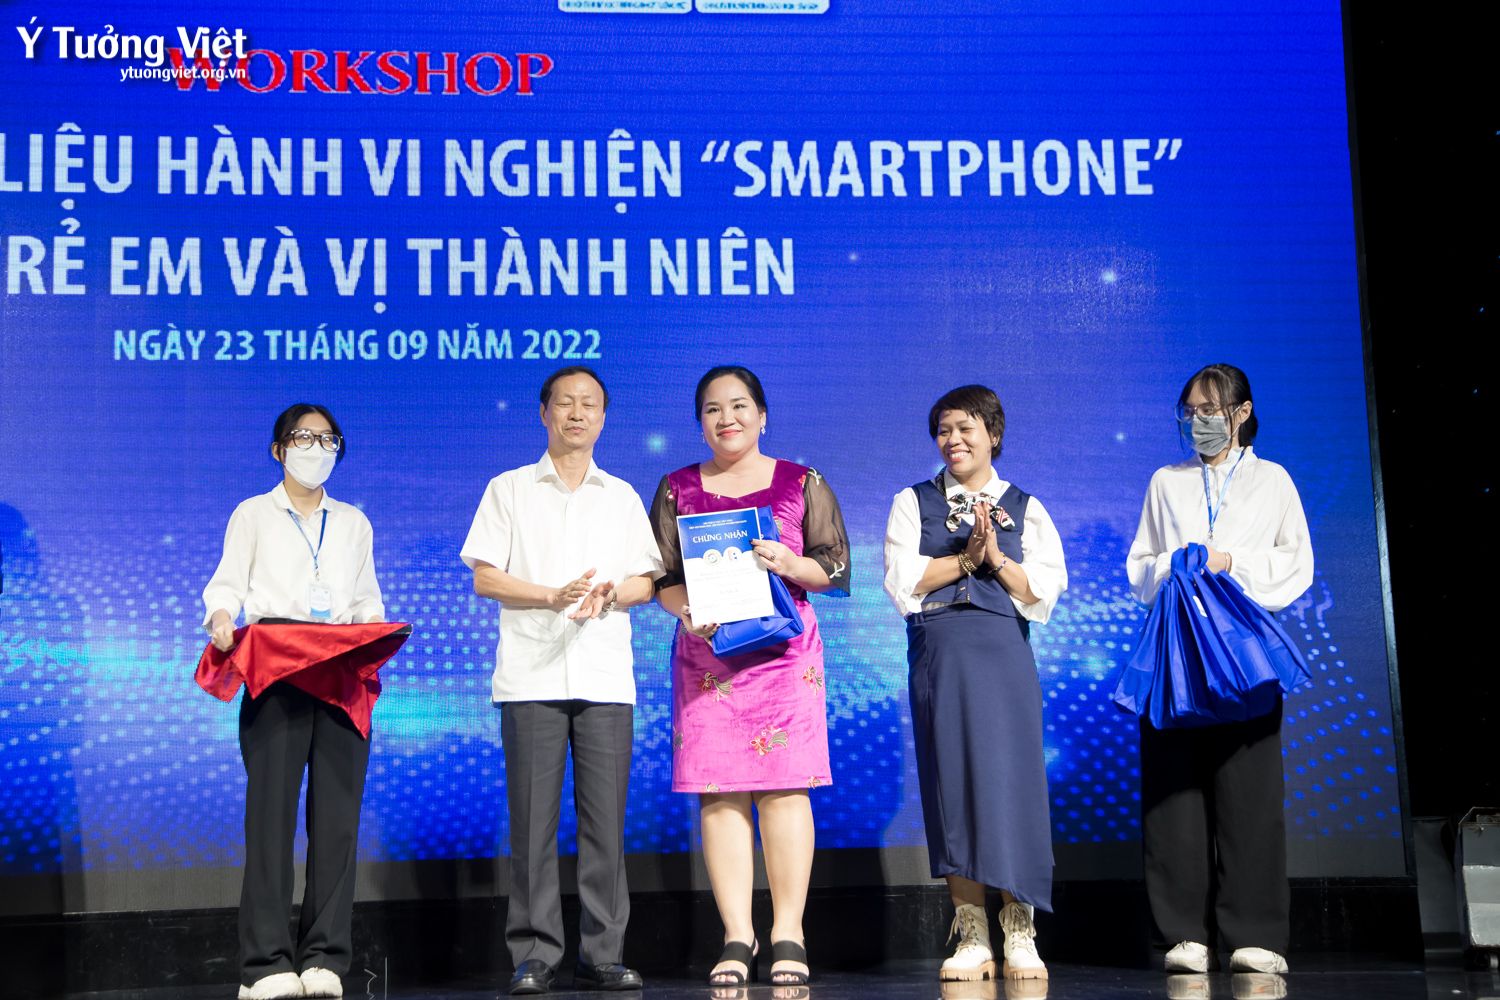 Workshop Tham Vấn, Trị Liệu Hành Vi Nghiện Smartphone ở Trẻ Em Và Vị Thành Niên Những Hình ảnh Thật đáng Nhớ 26